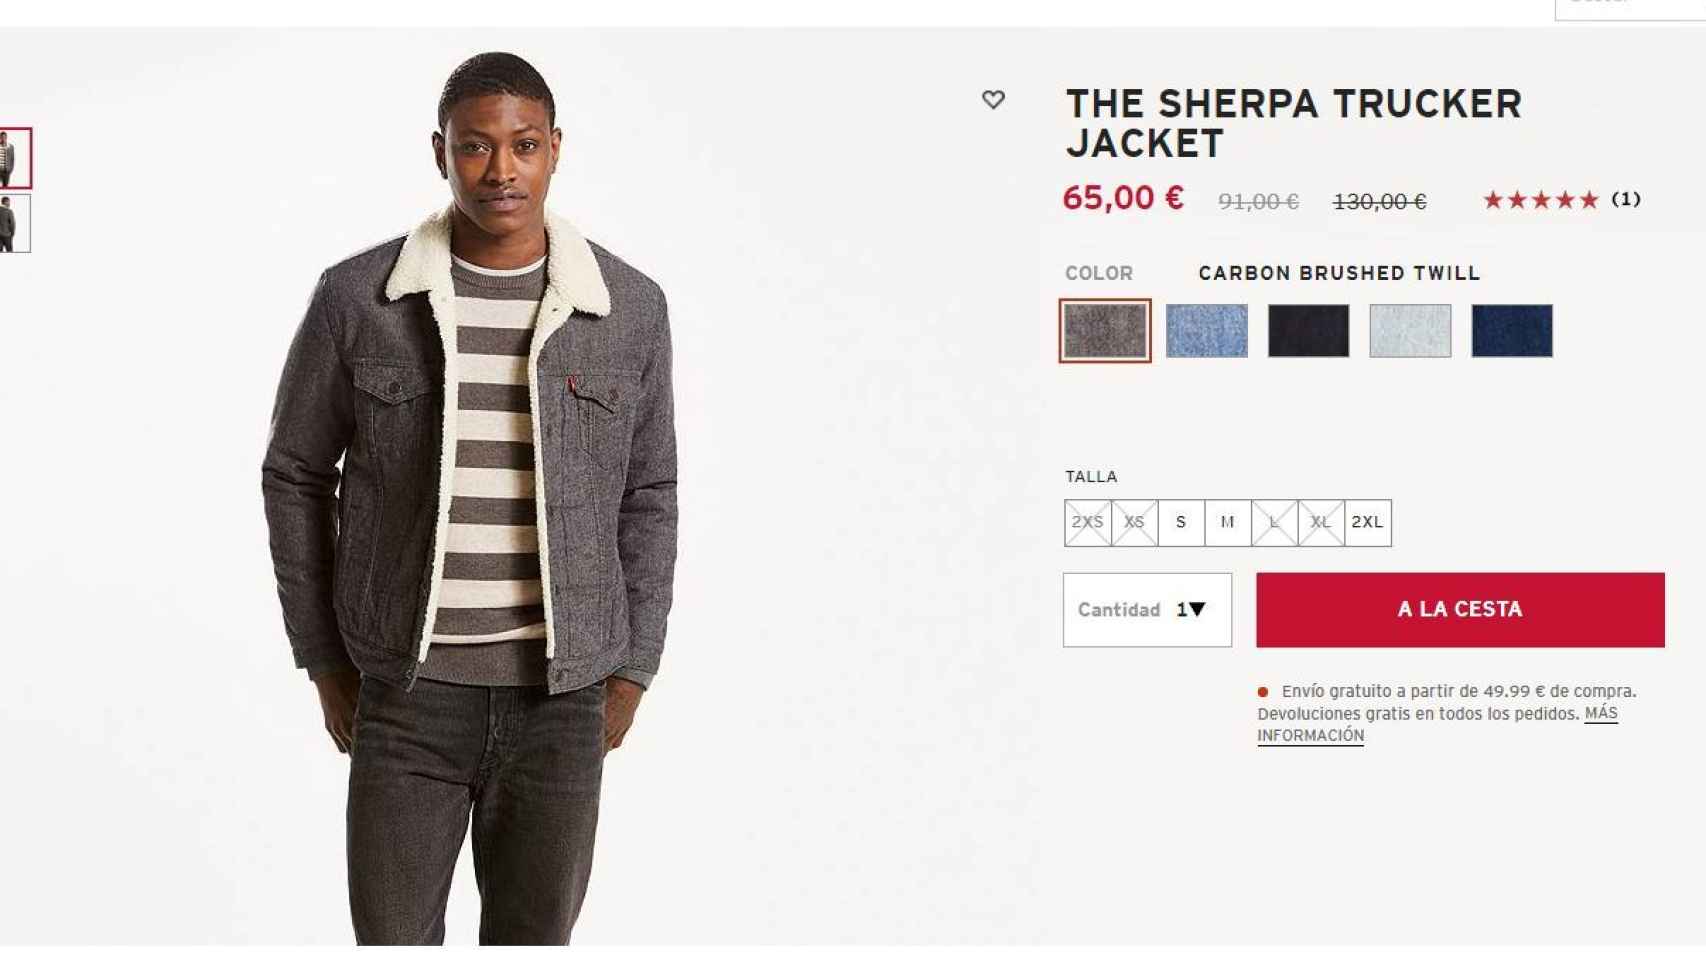 Captura de la compra online  de la chaqueta.